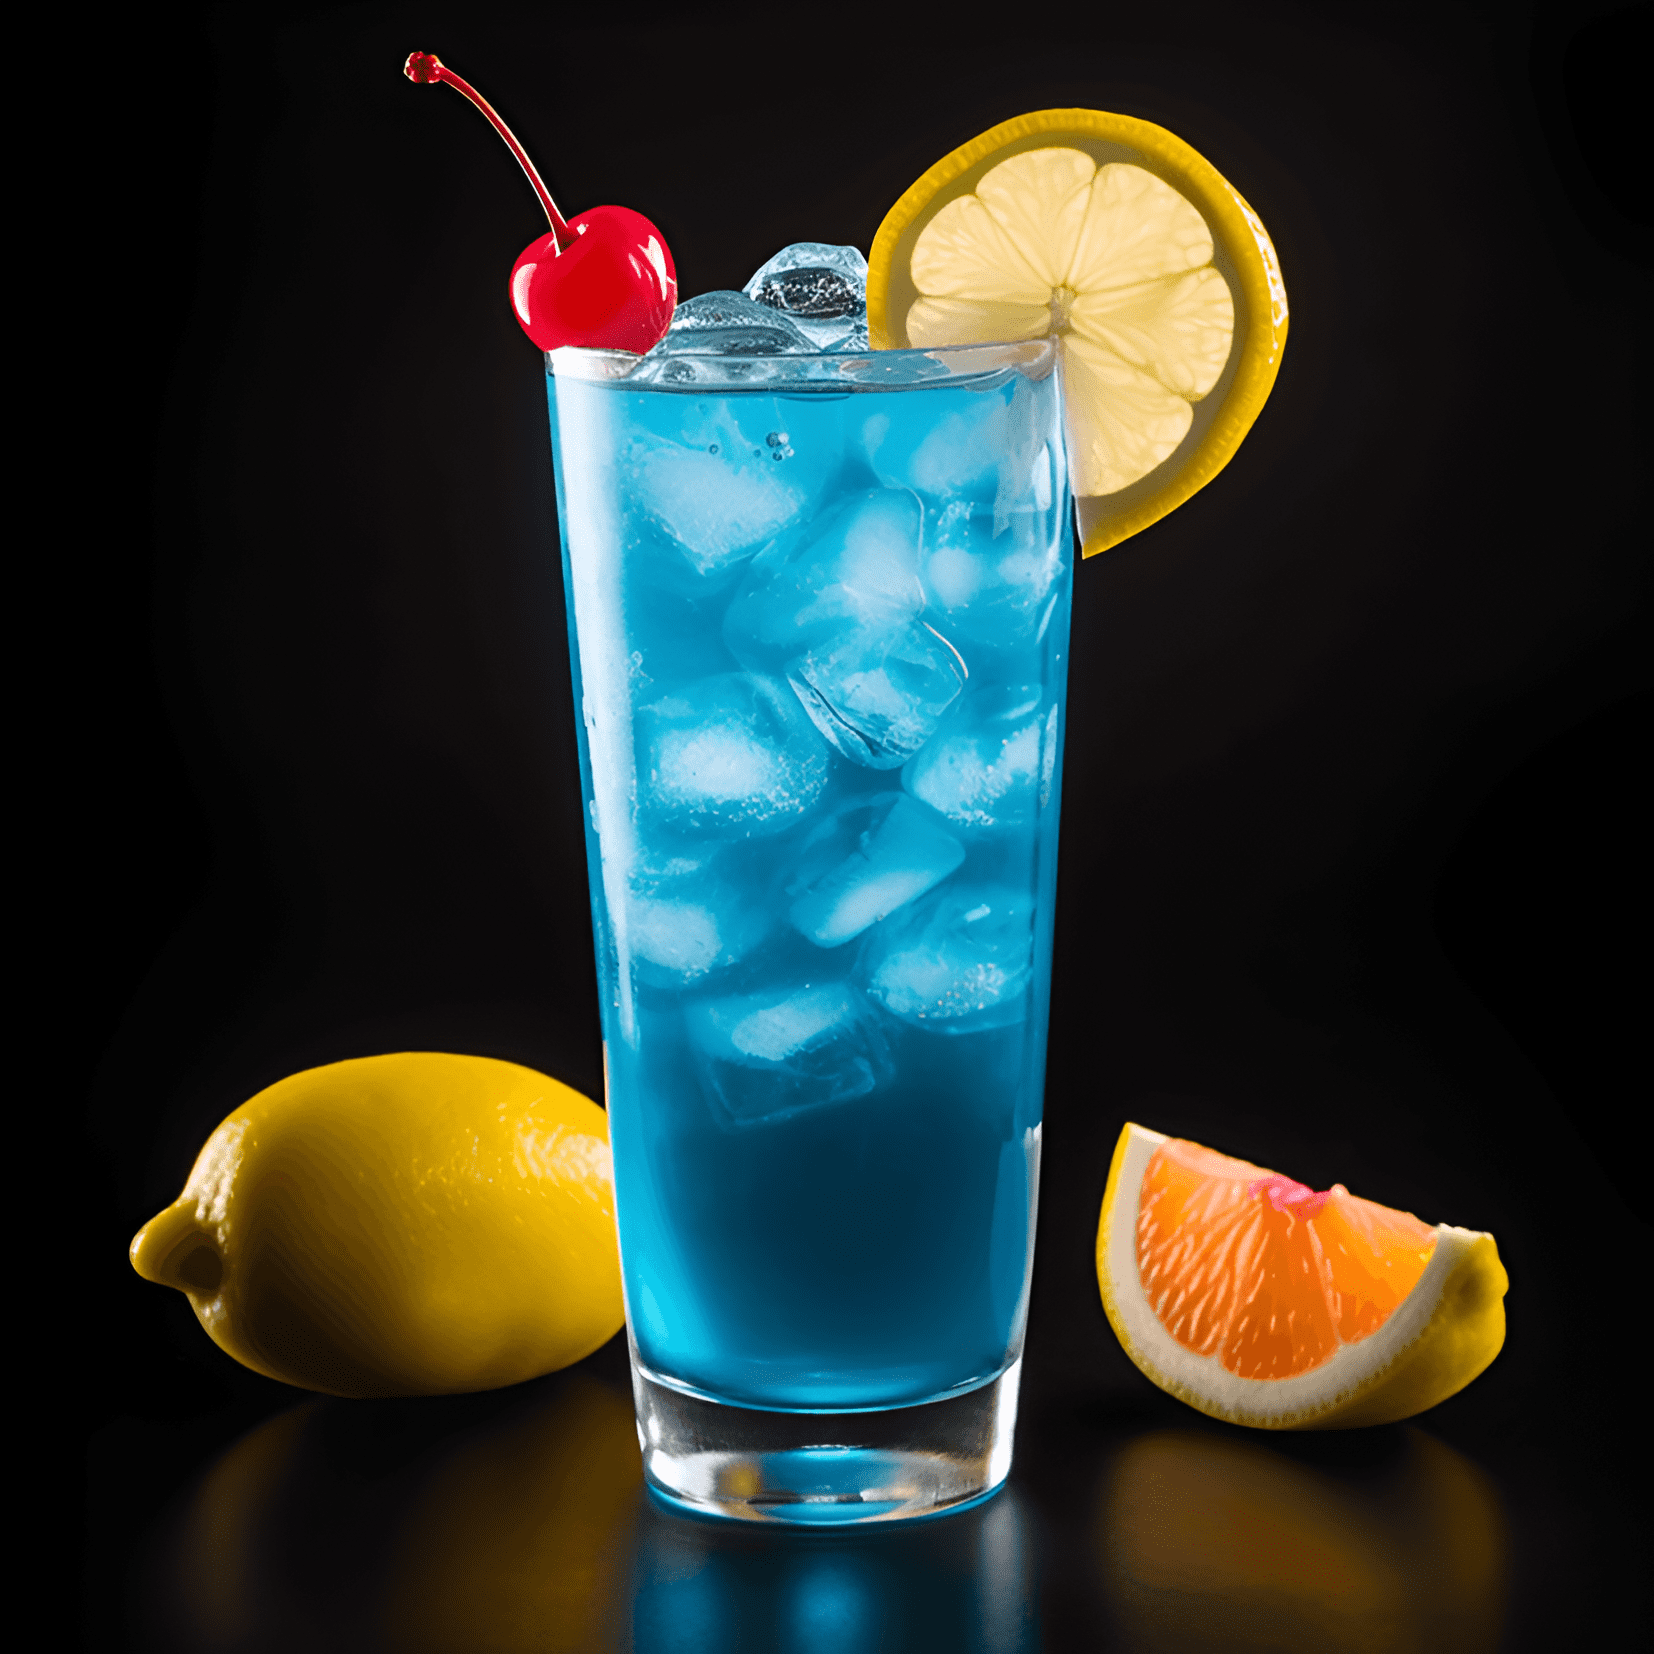 Electric Lemonade Cóctel Receta - El Electric Lemonade es un cóctel dulce, ácido y refrescante con un vibrante color azul. Tiene un equilibrio perfecto de sabores agrios y dulces, con un toque de efervescencia del refresco.